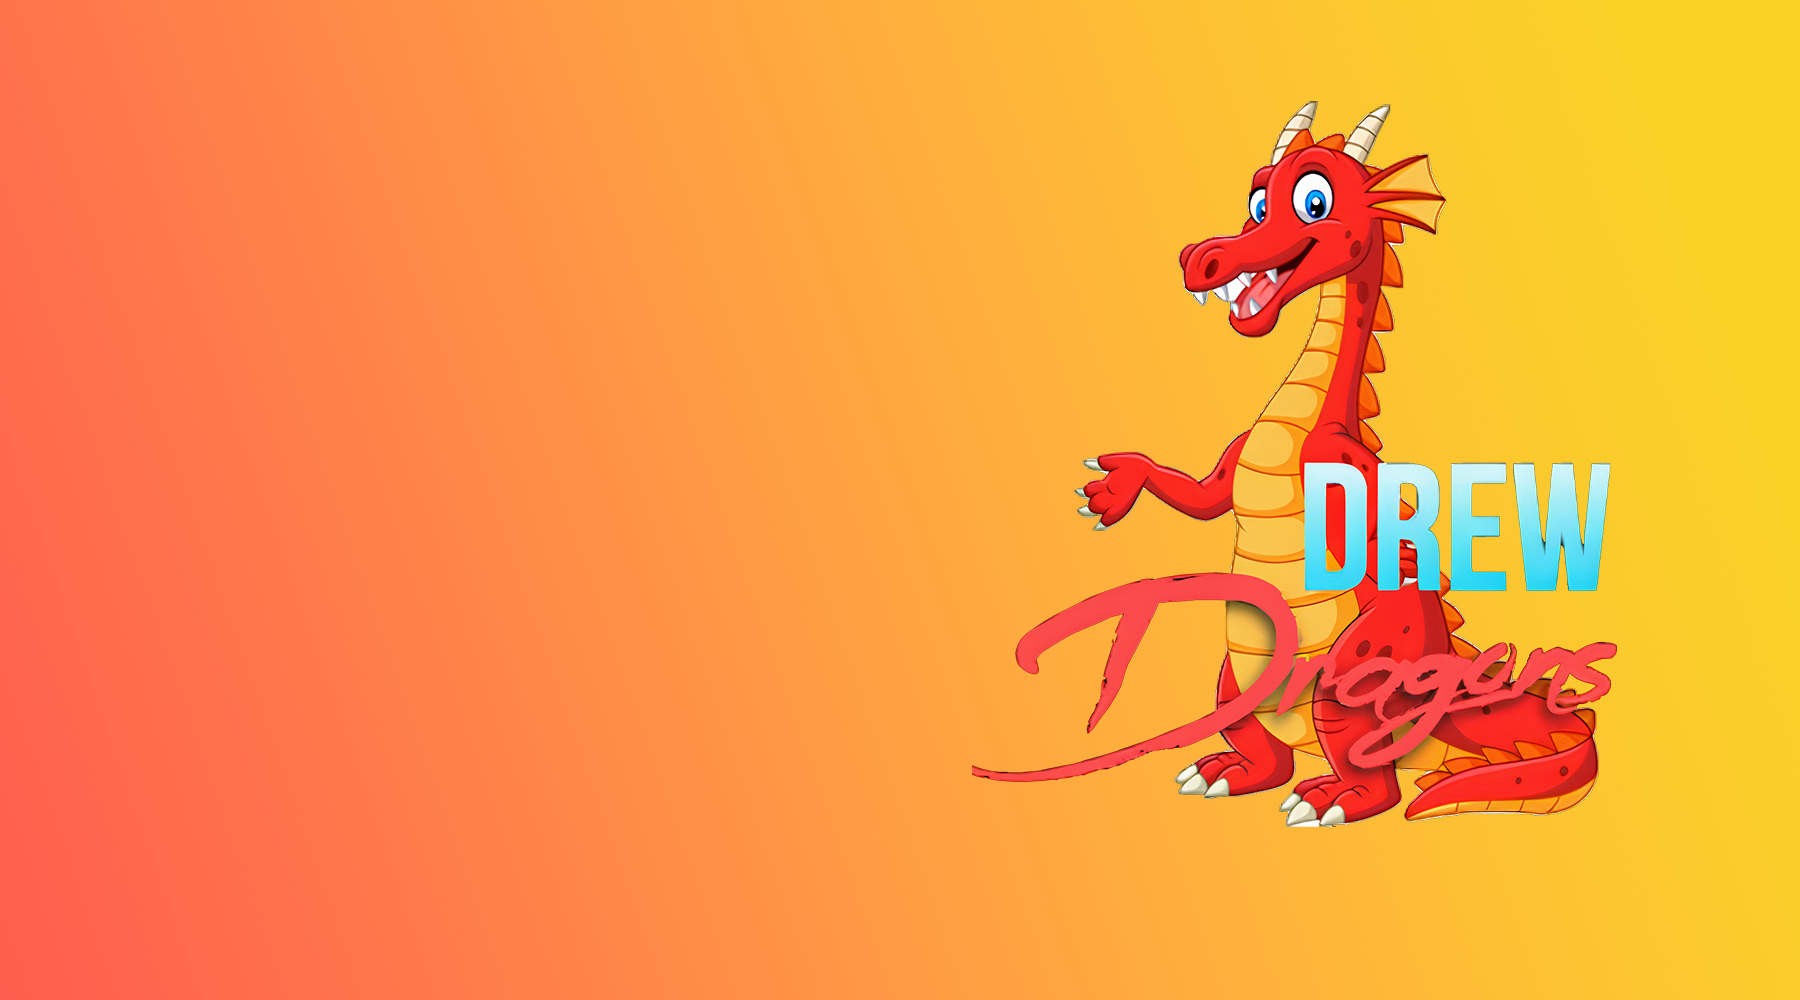 Drew dragon logo